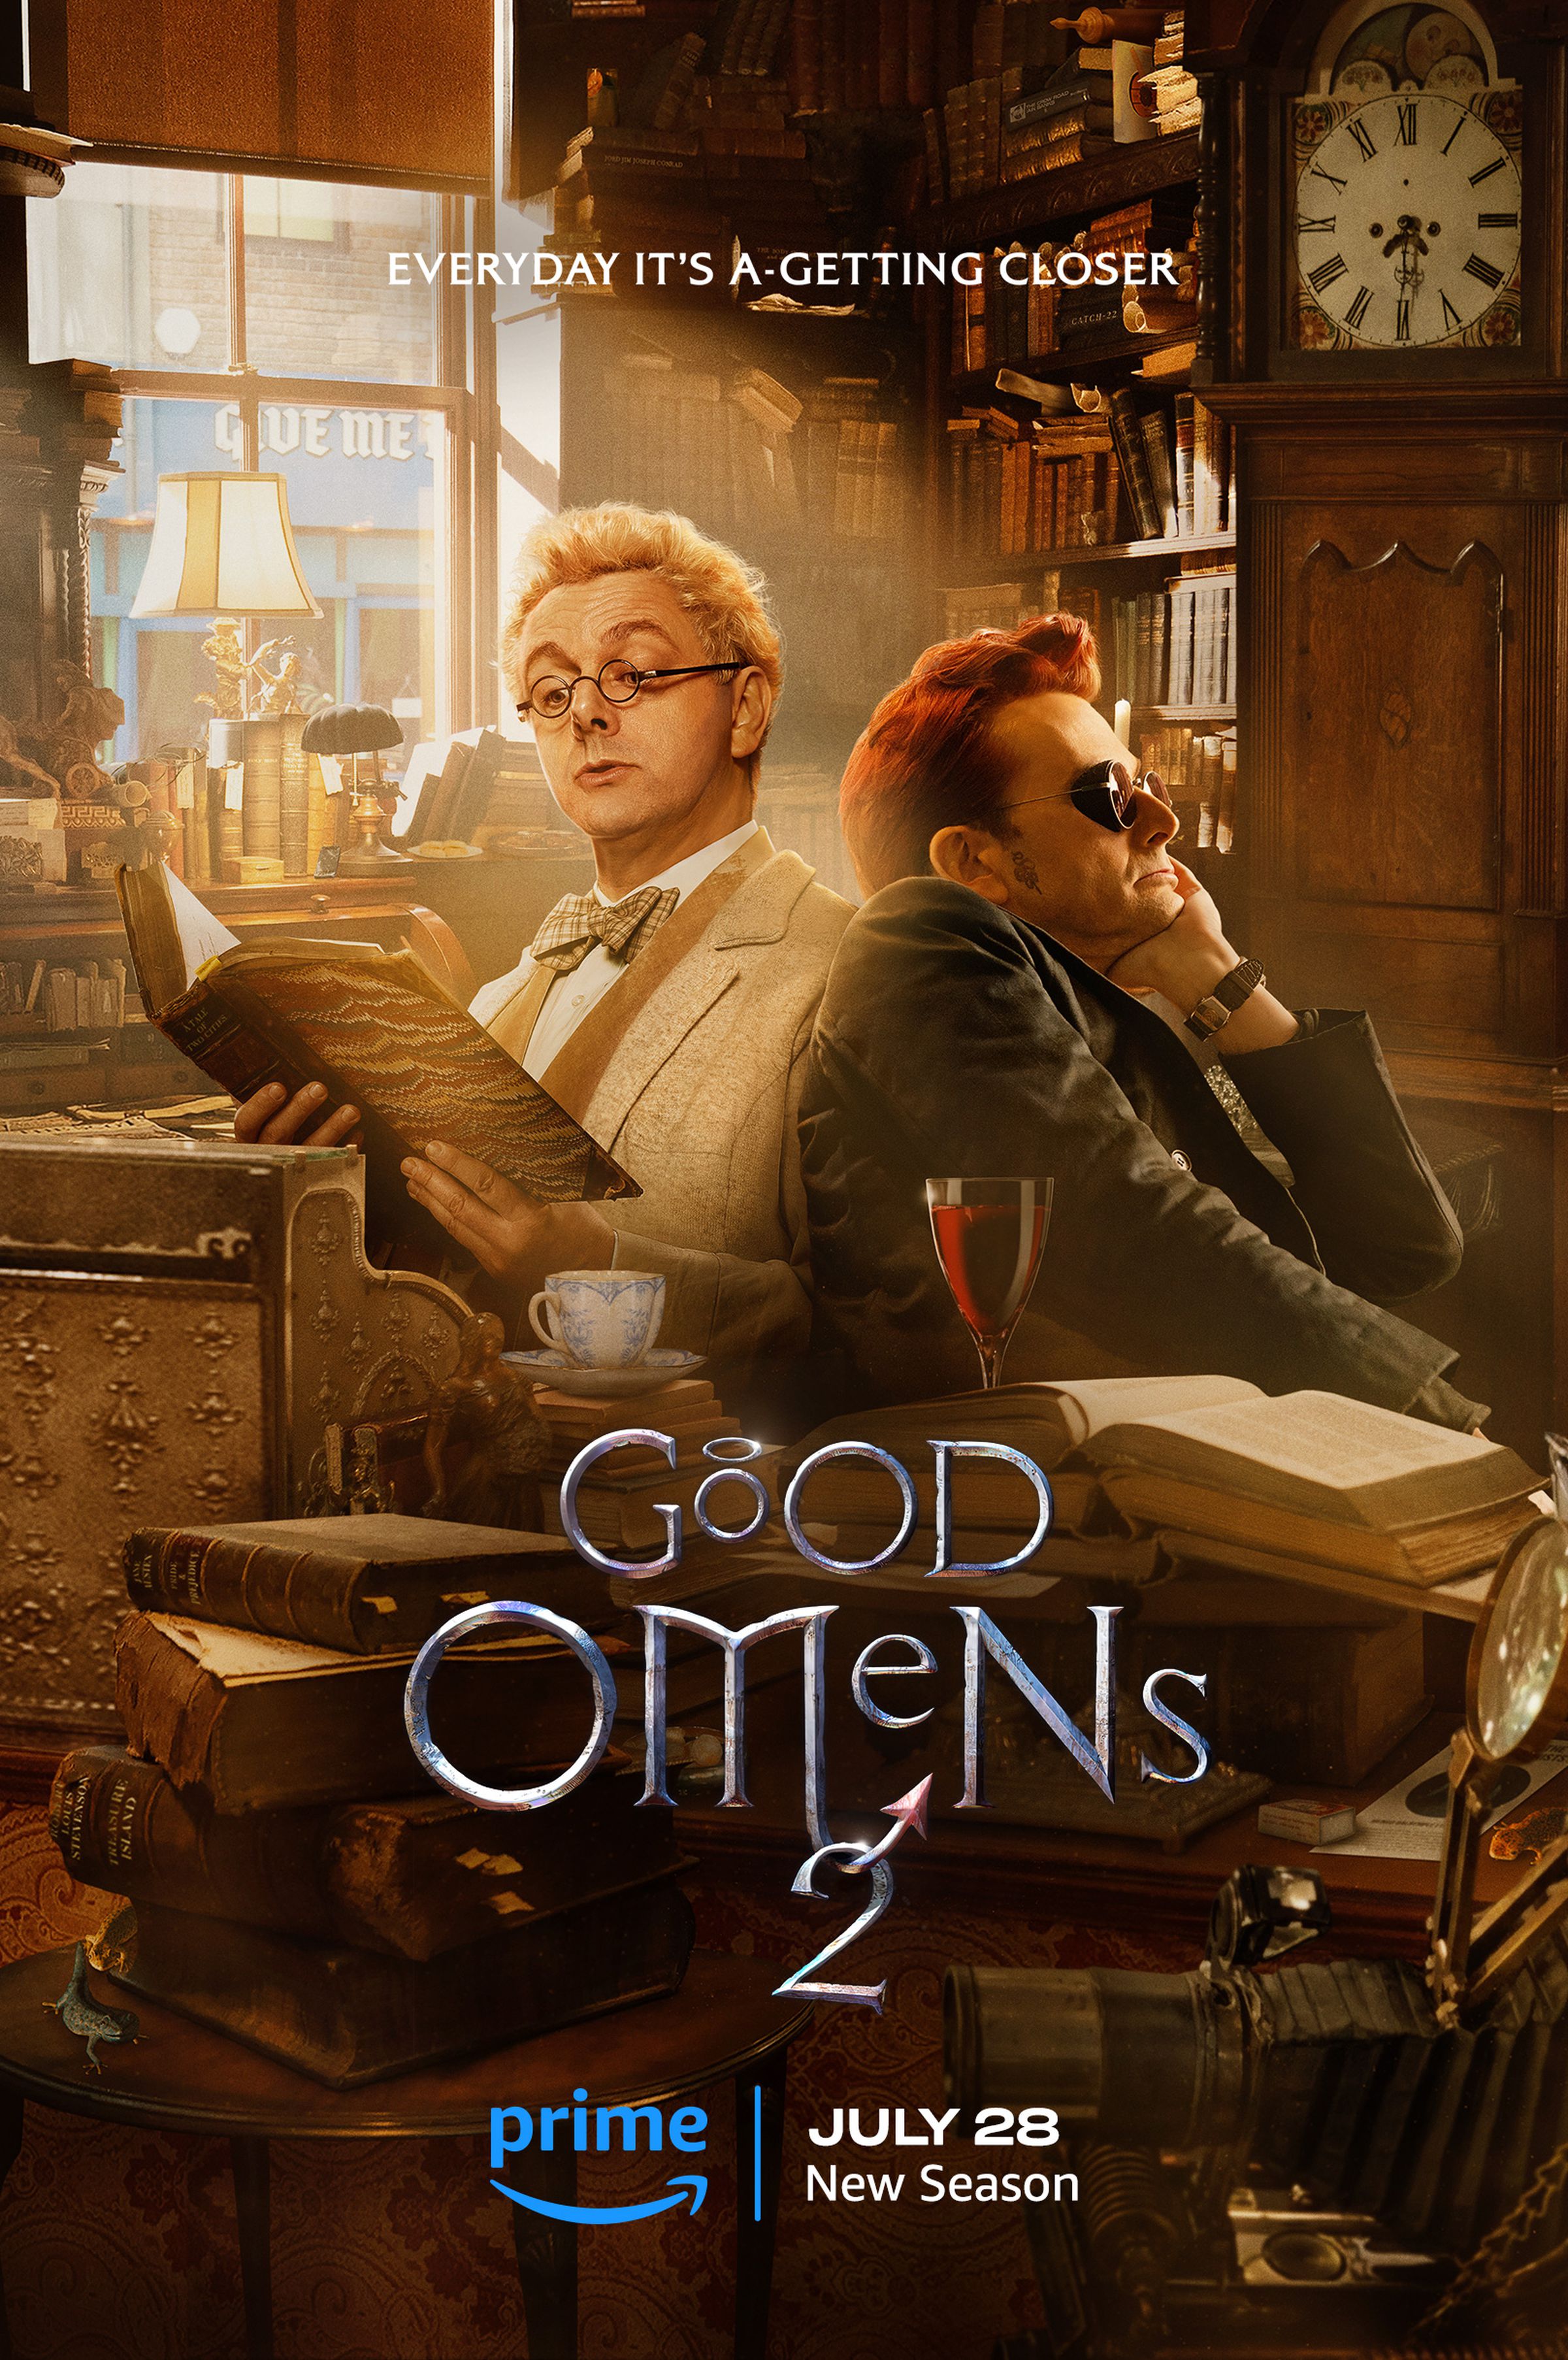 Promotional art for Good Omens season 2.